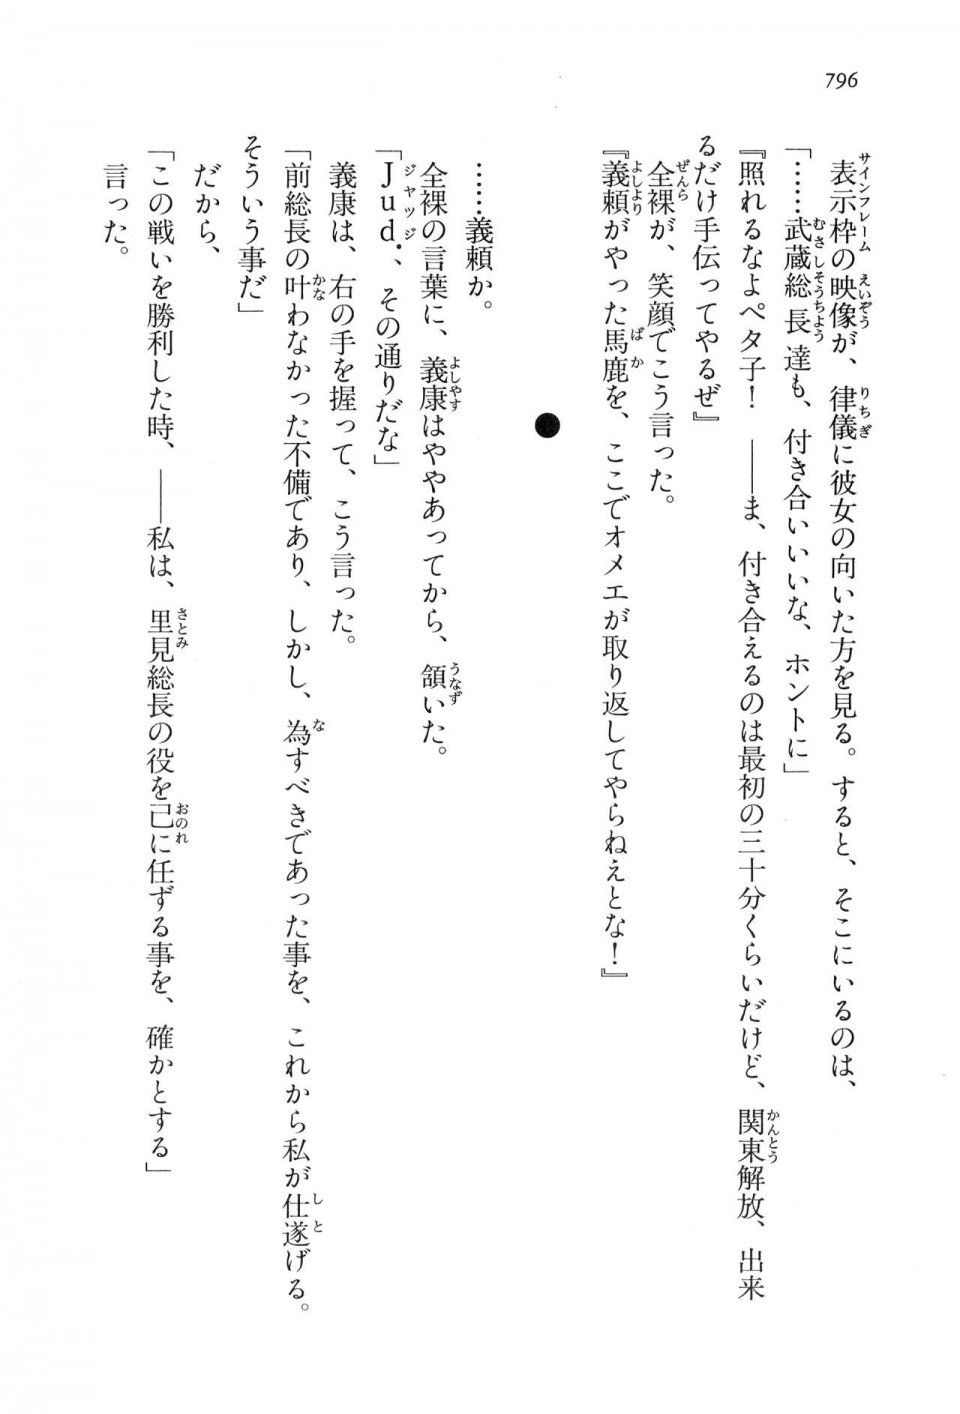 Kyoukai Senjou no Horizon LN Vol 16(7A) - Photo #796